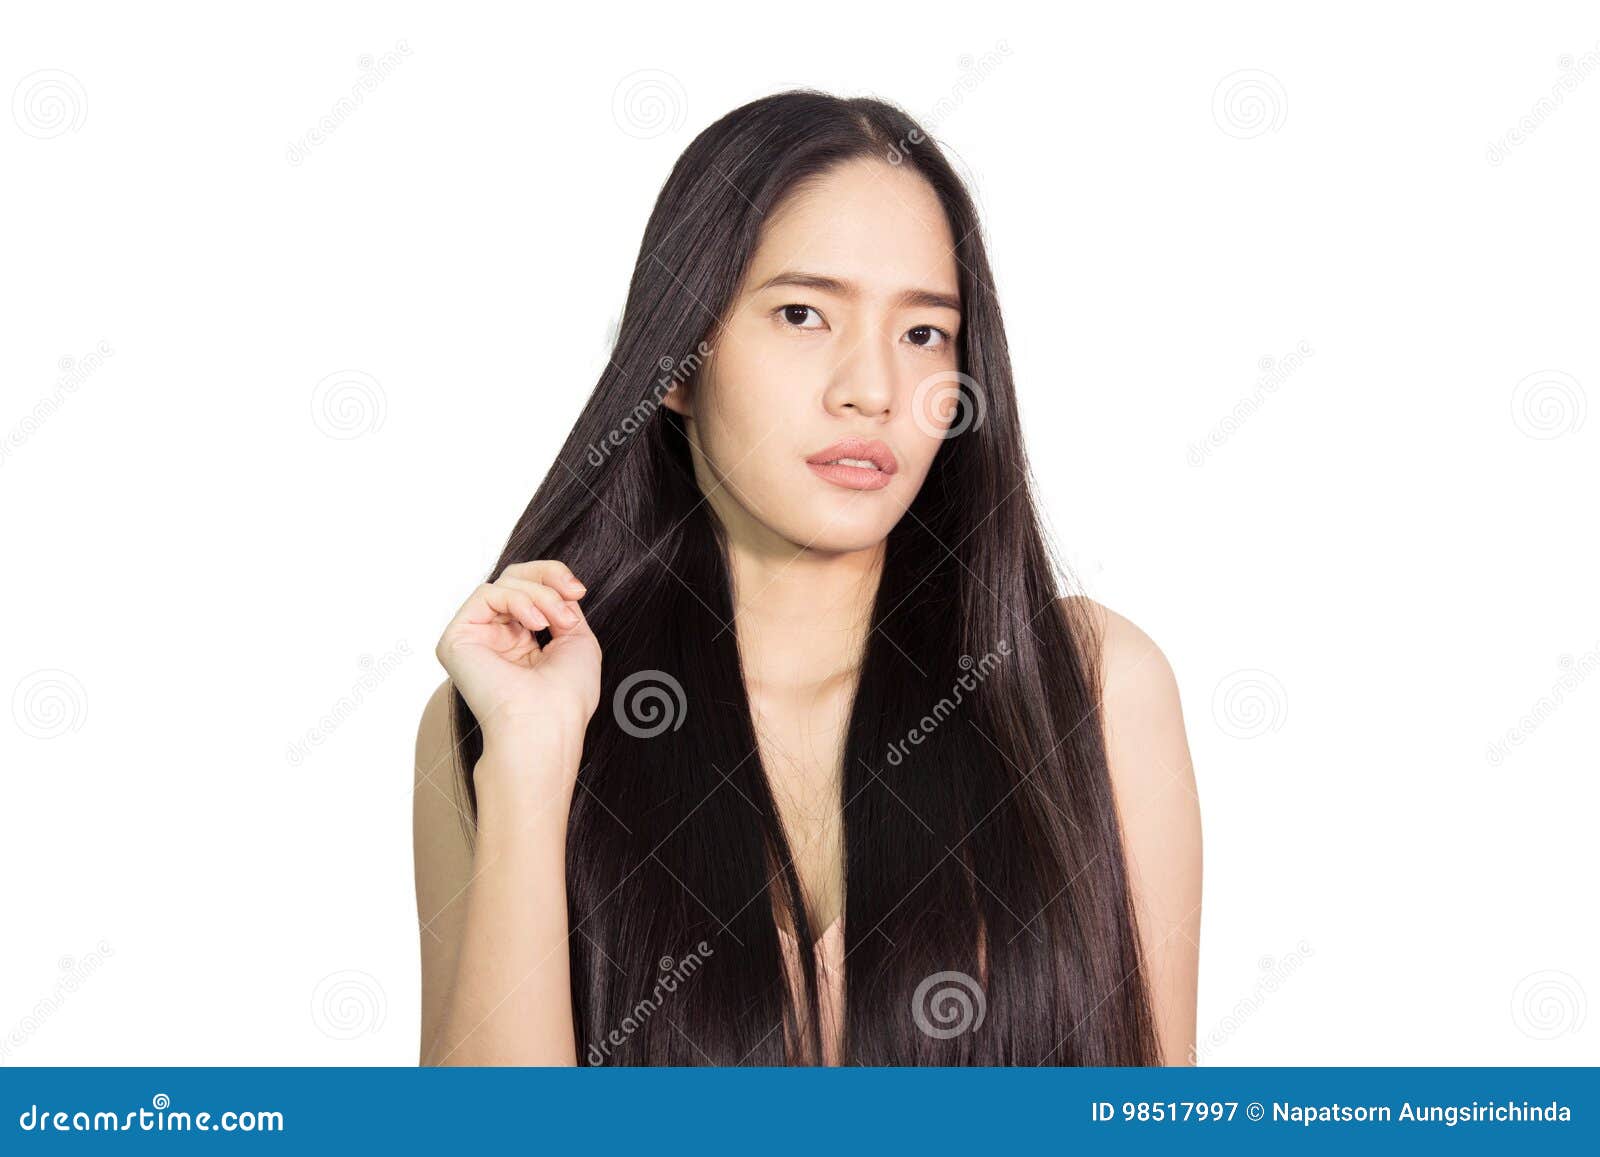 long hair cam girl